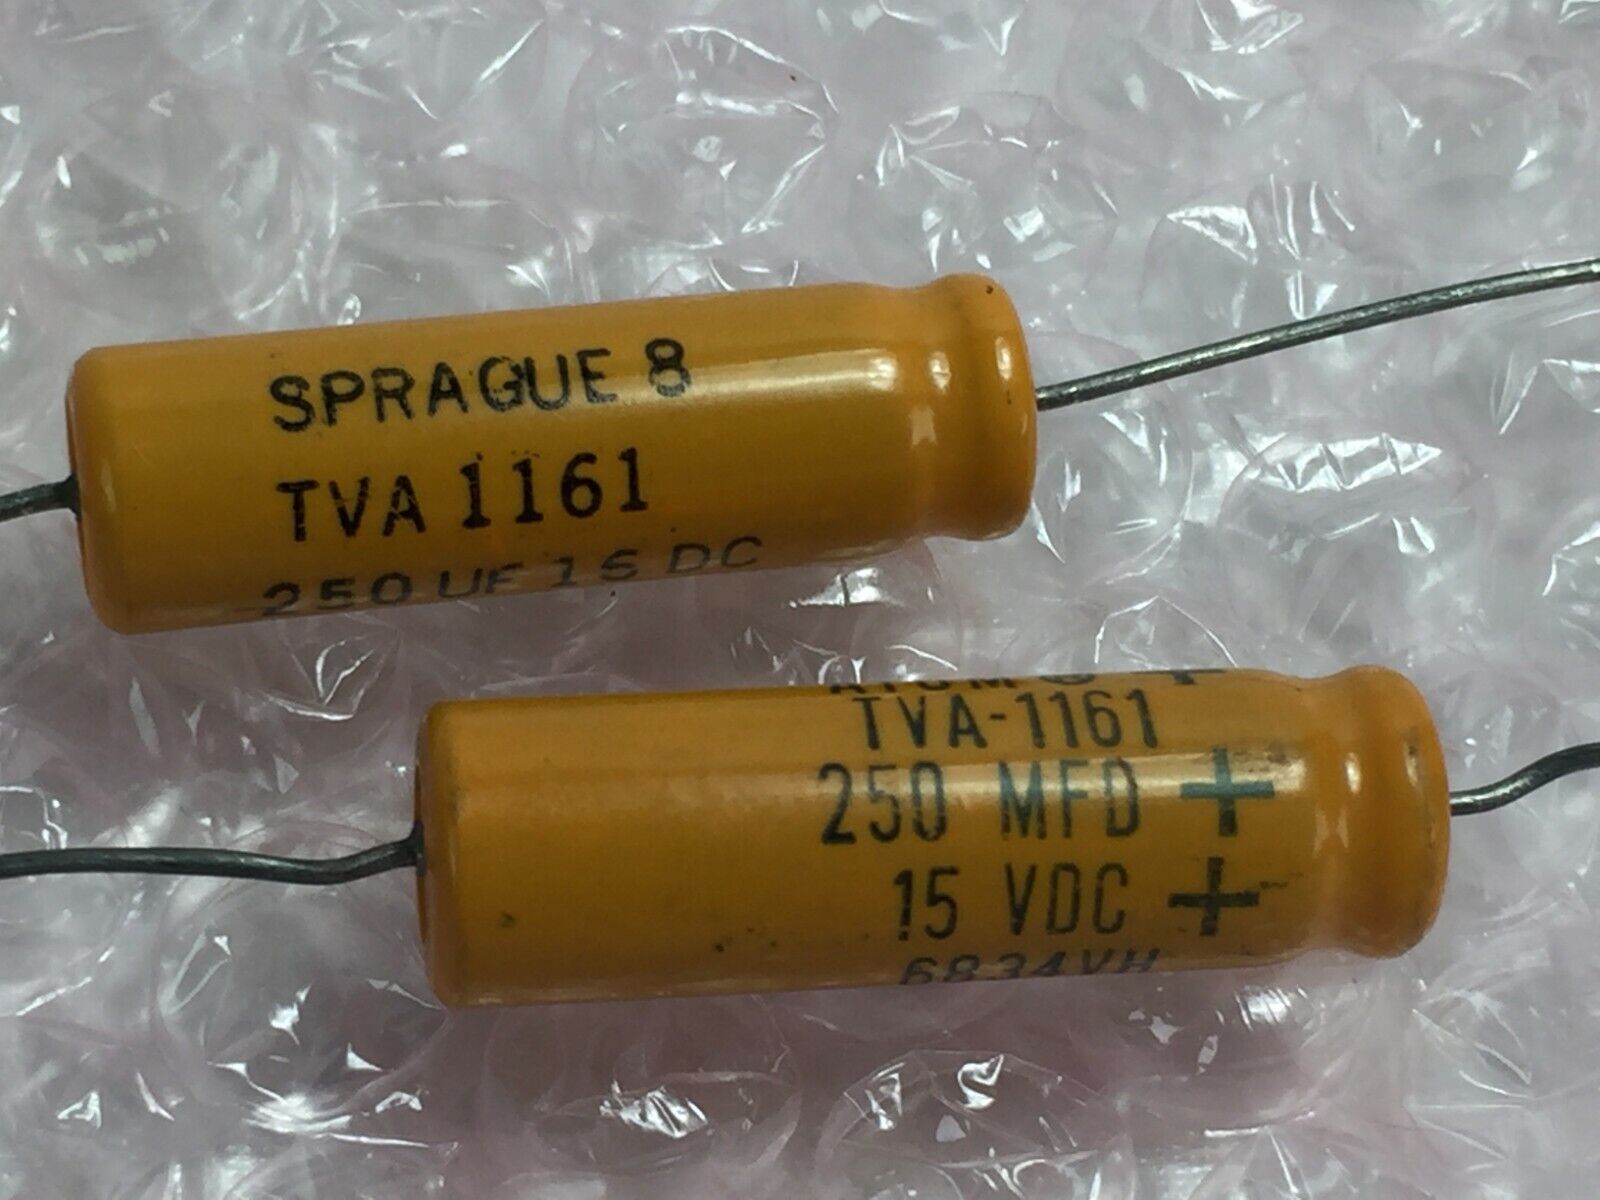 (2) Sprague TVA1161 Capacitor 250MFD  15VDC   Lot of 2   NOS